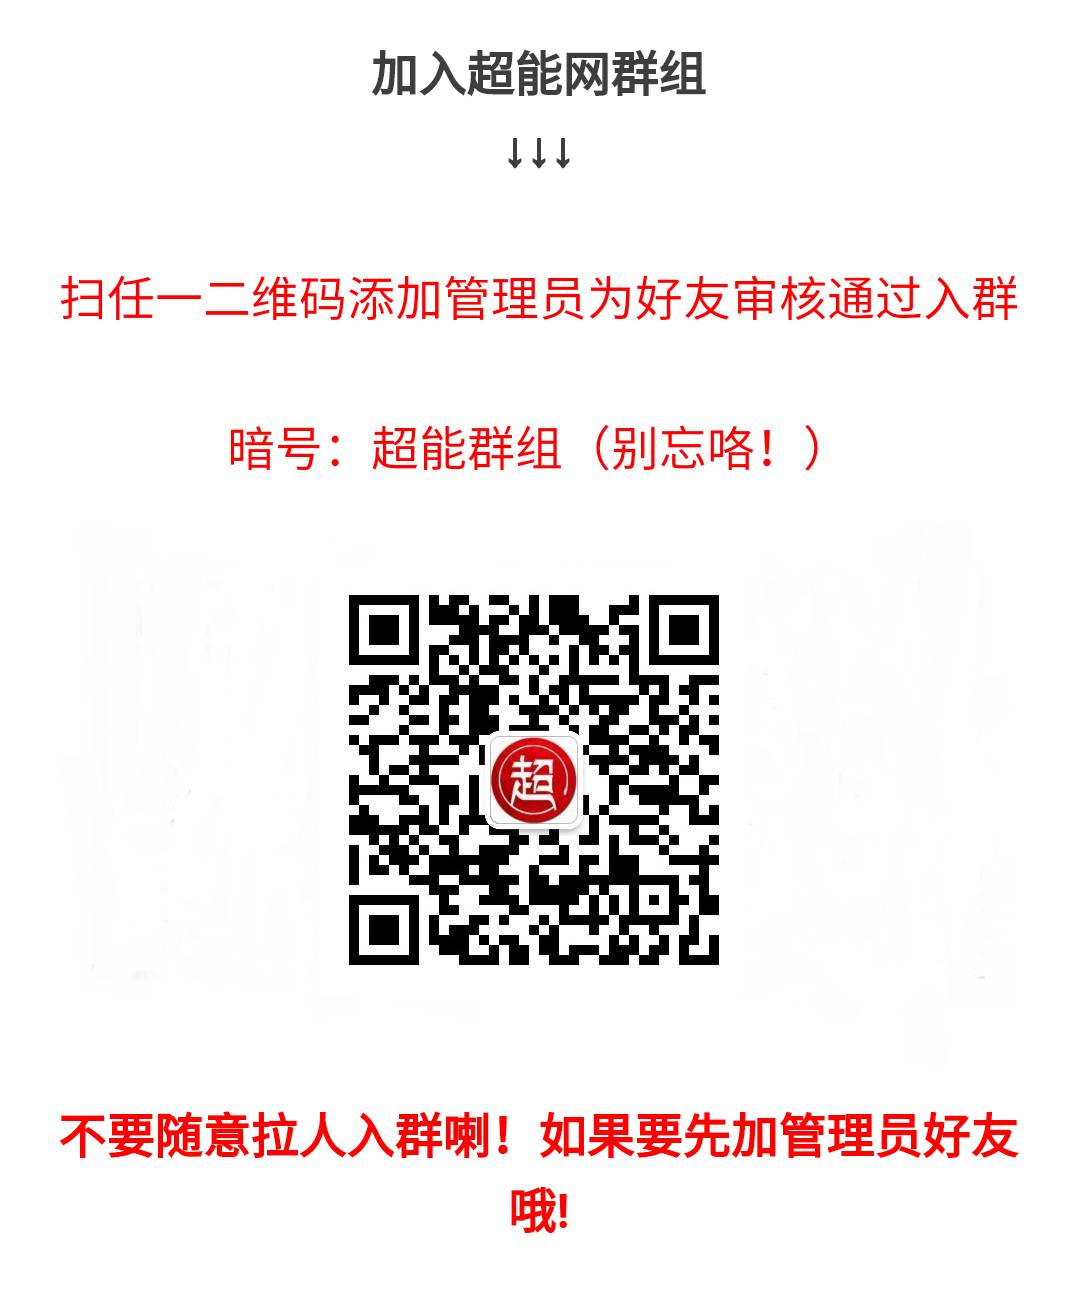 苹果台湾商店id_台湾苹果商店id账号_appleid台湾